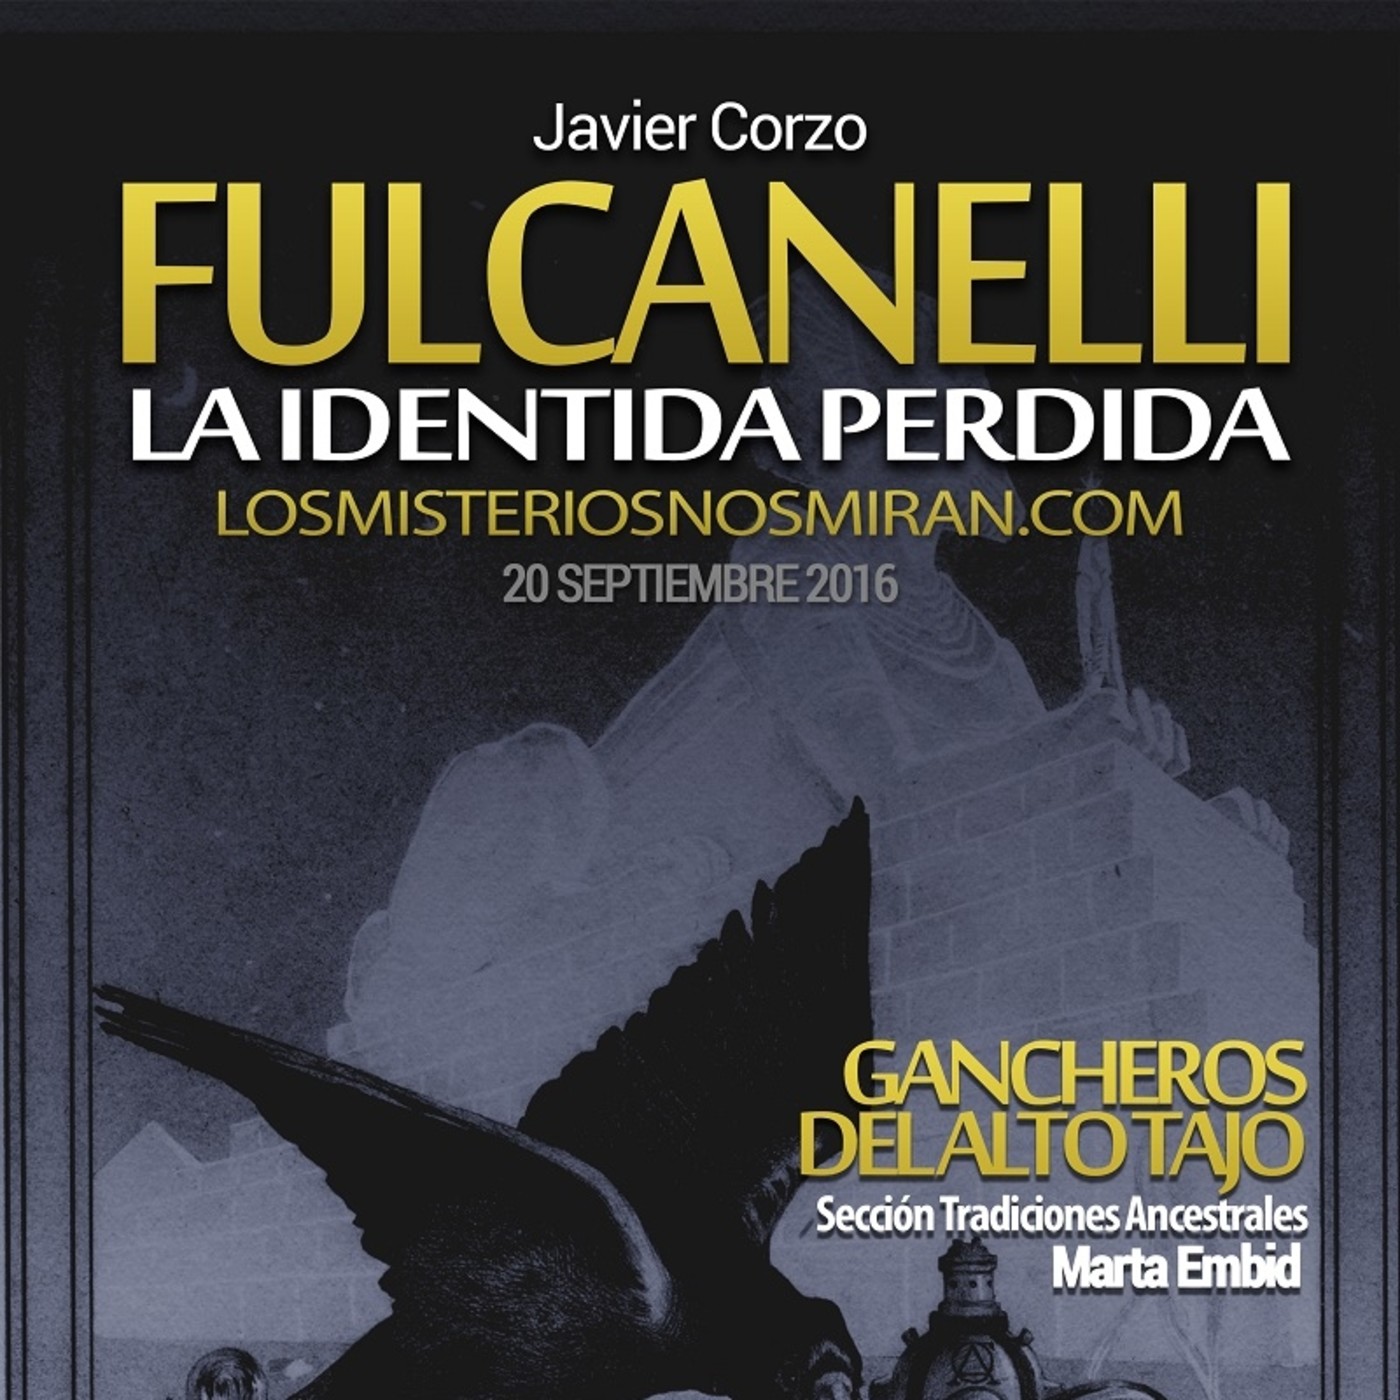 Programa 131 ”Fulcanelli, la identidad perdida con Javier Corzo y Luis Silva” y ”Sección: Gancheros del Alto Tajo”